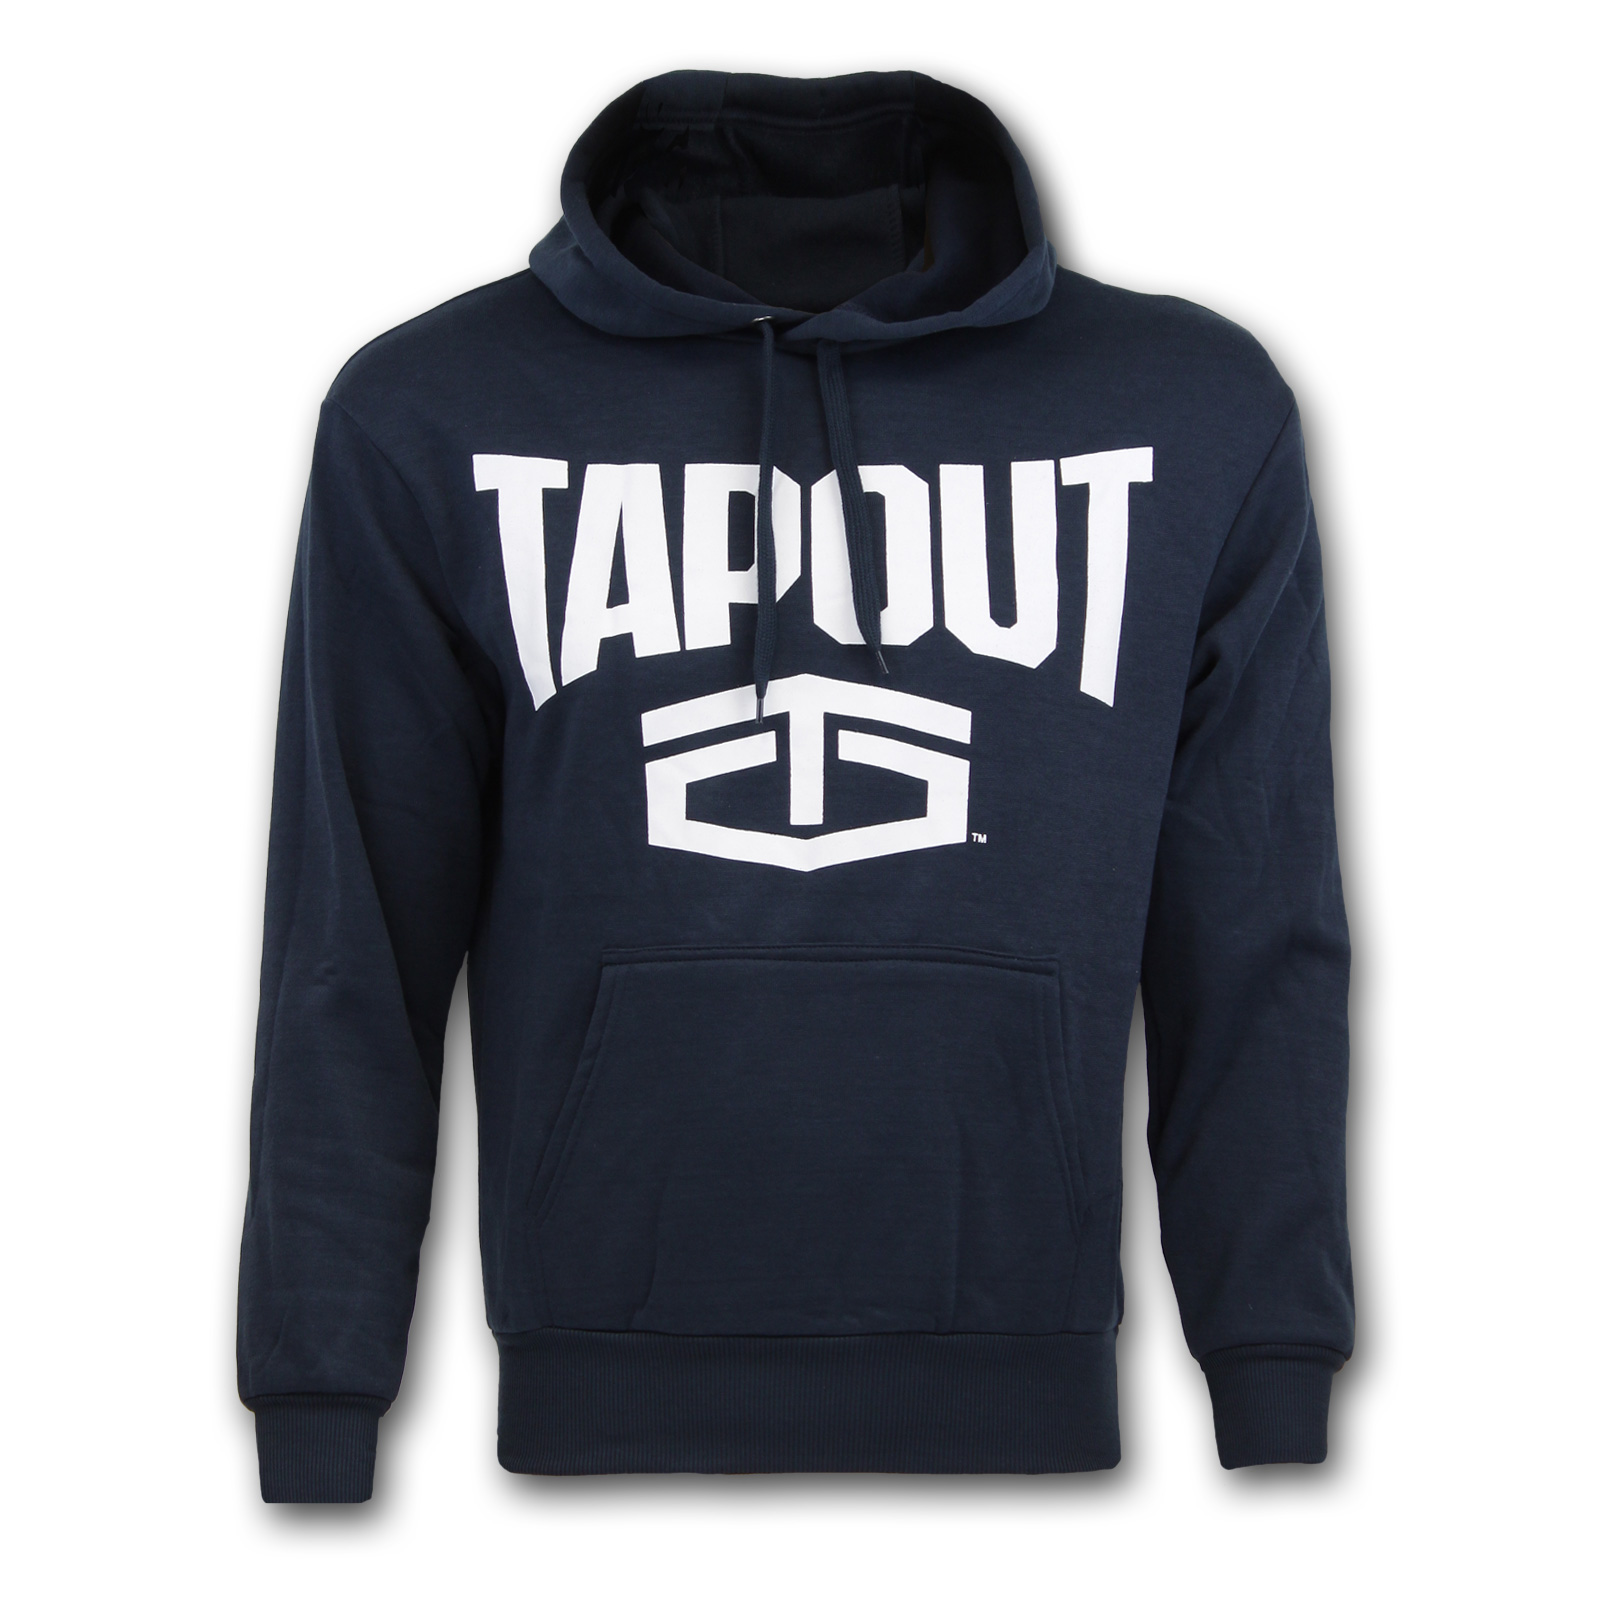 Tapout Herren Großes Logo Kapuzenpullover Sweatshirt Hoodie Hoody Kängurutasche 